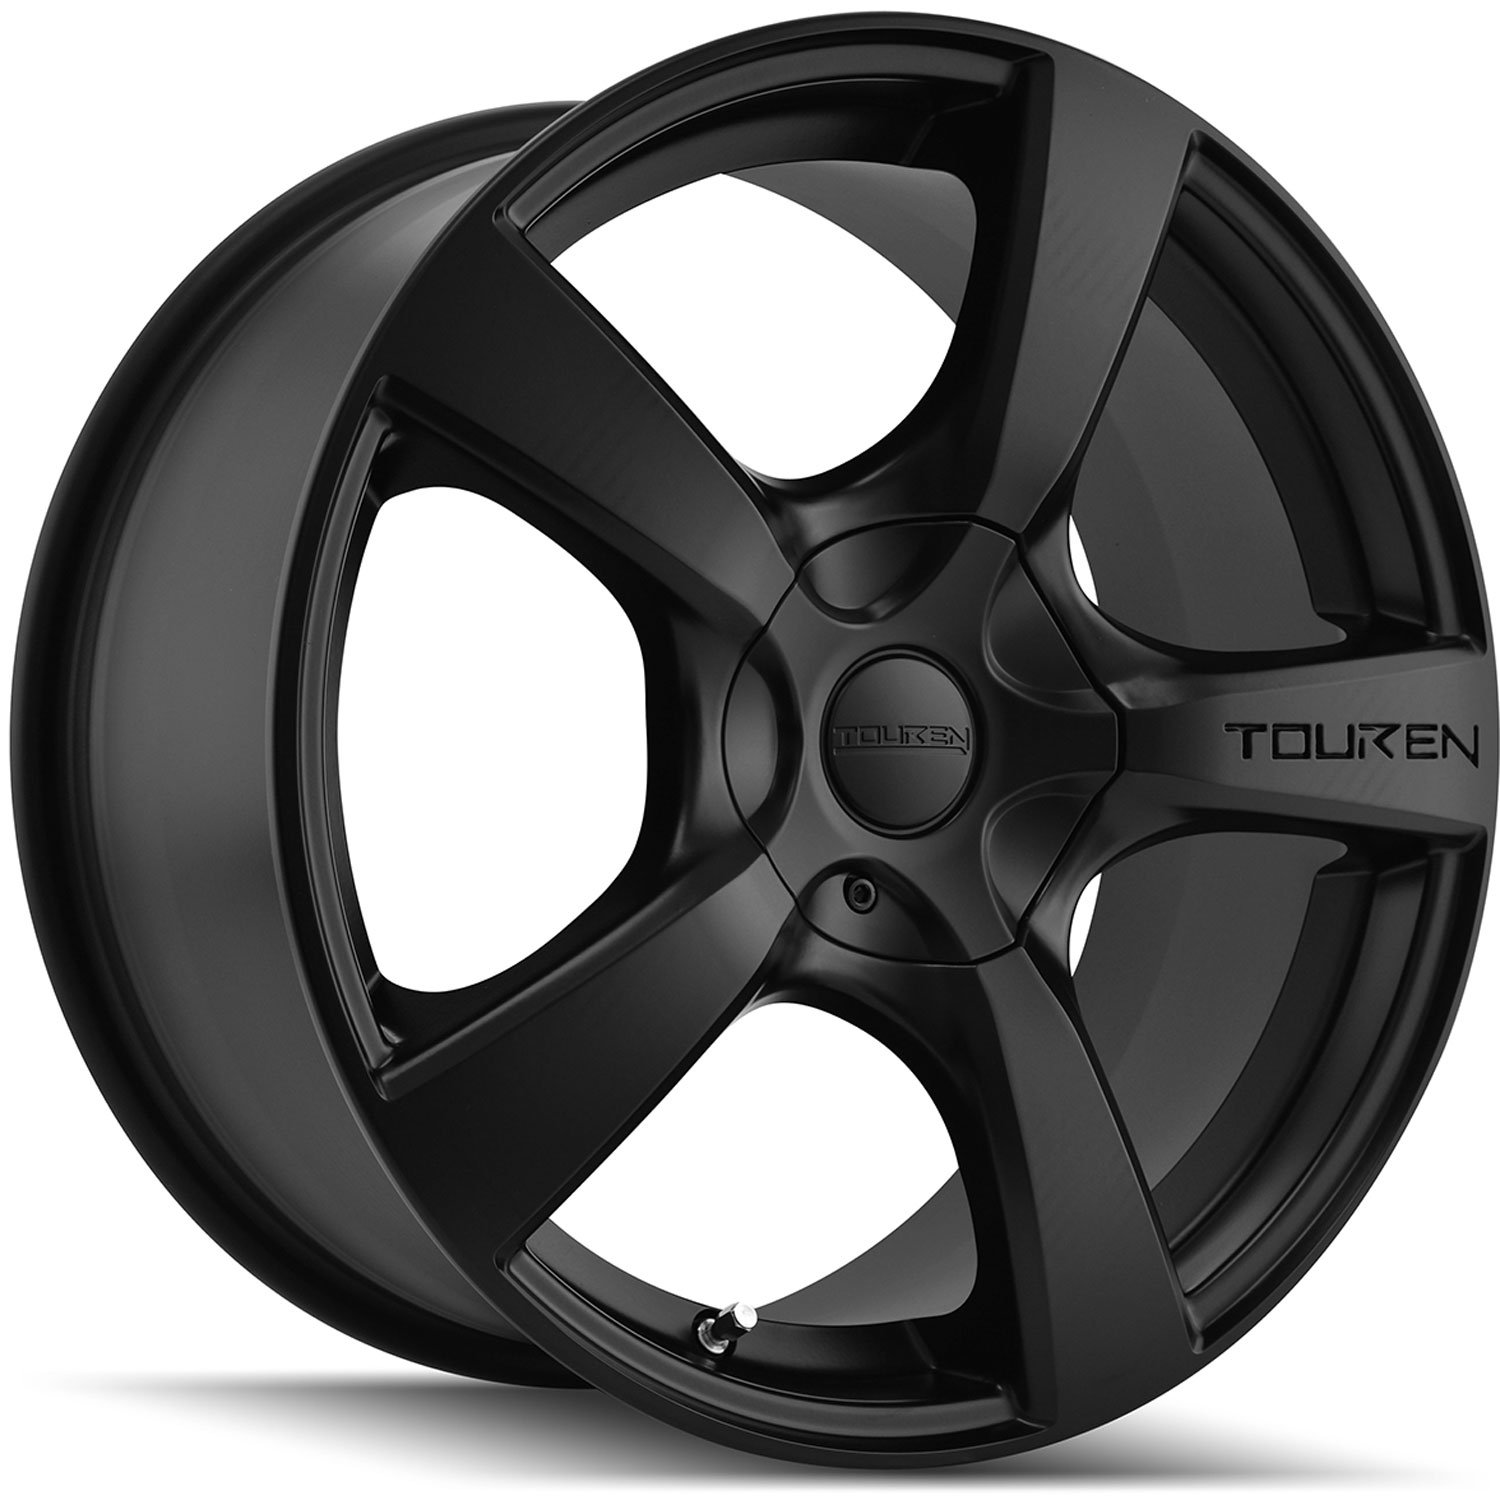 Touren TR9 Series Wheel Size: 19" x 8.5" Bolt Circle: 6 x 132mm